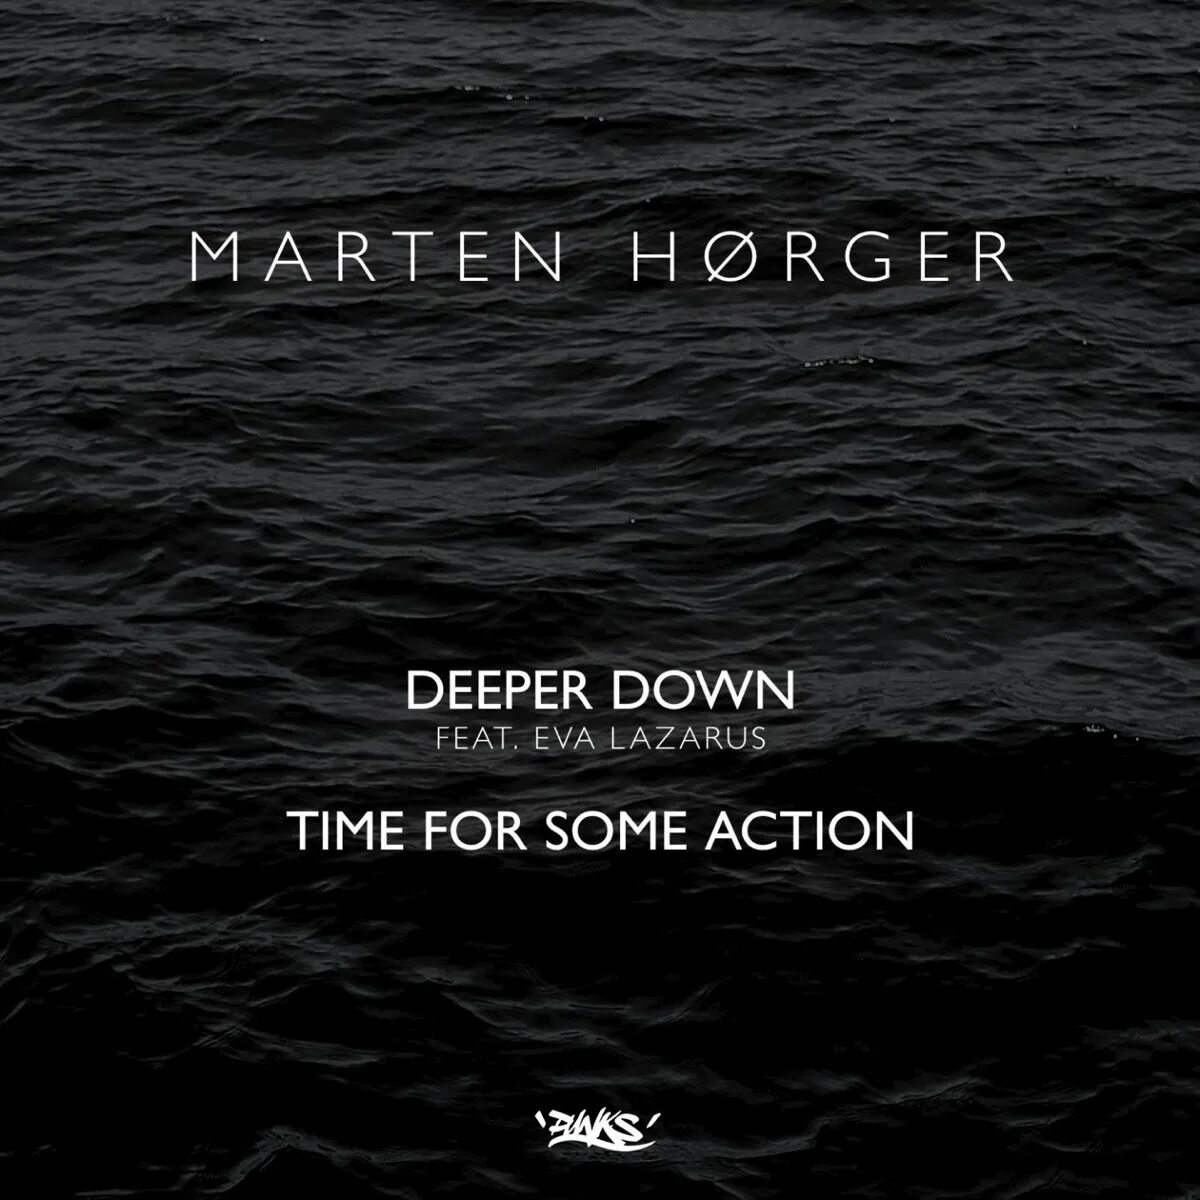 Deeper down bass. Deeper down. Eva Lazarus. "Marten Hørger" && ( исполнитель | группа | музыка | Music | Band | artist ) && (фото | photo). Marten Hørger & Neon Steve фото.